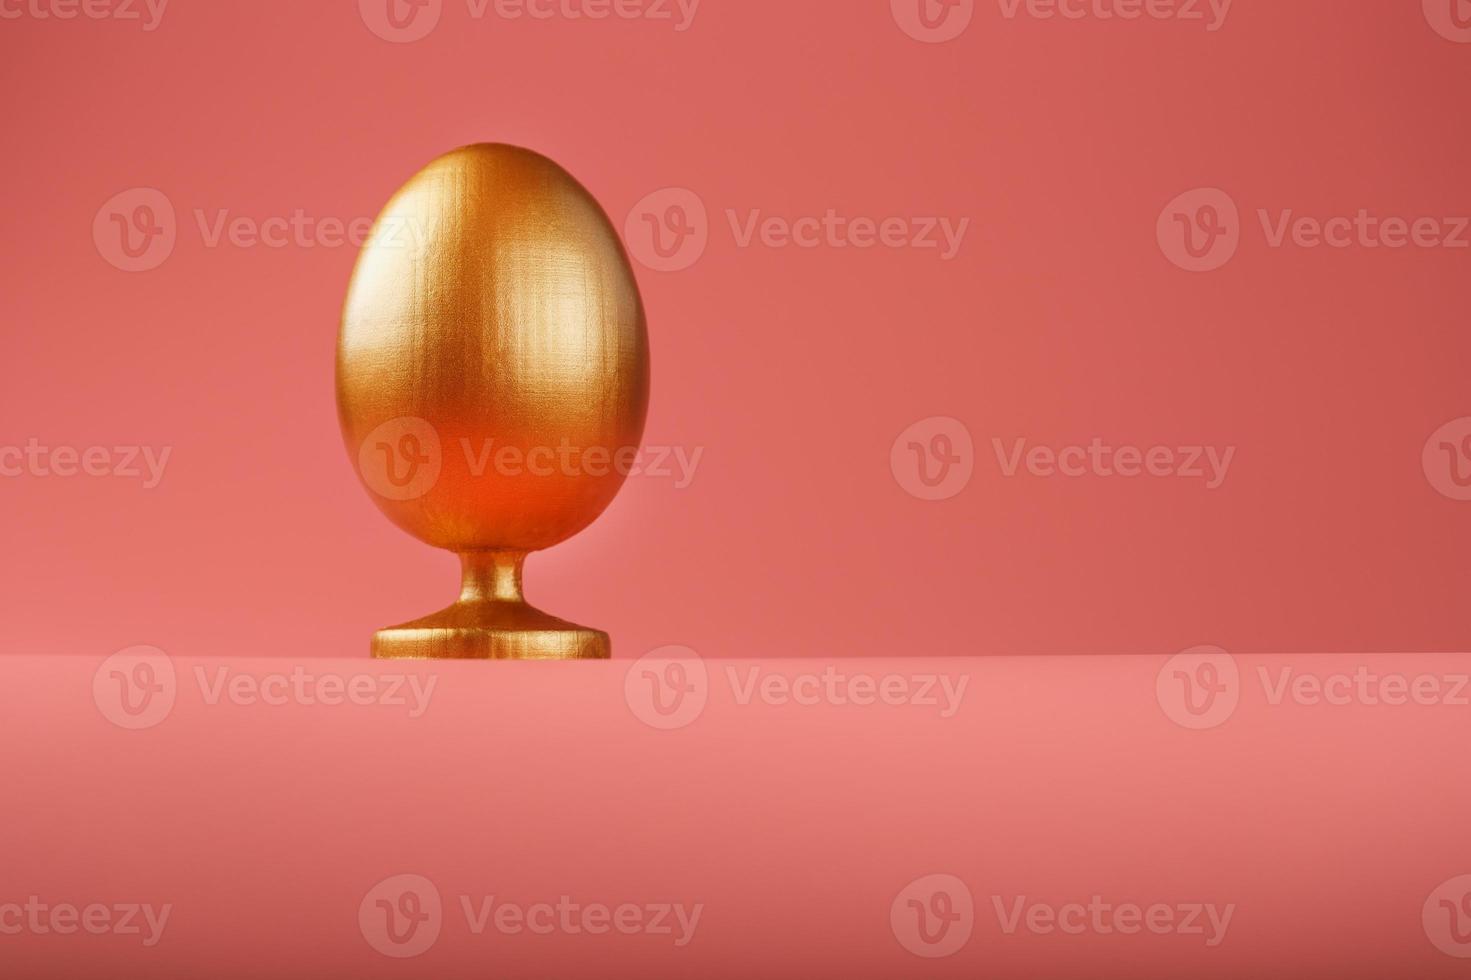 huevo dorado sobre un fondo rosa con un concepto minimalista. espacio para texto. plantillas de diseño de huevos de Pascua. decoración elegante con un concepto mínimo. foto